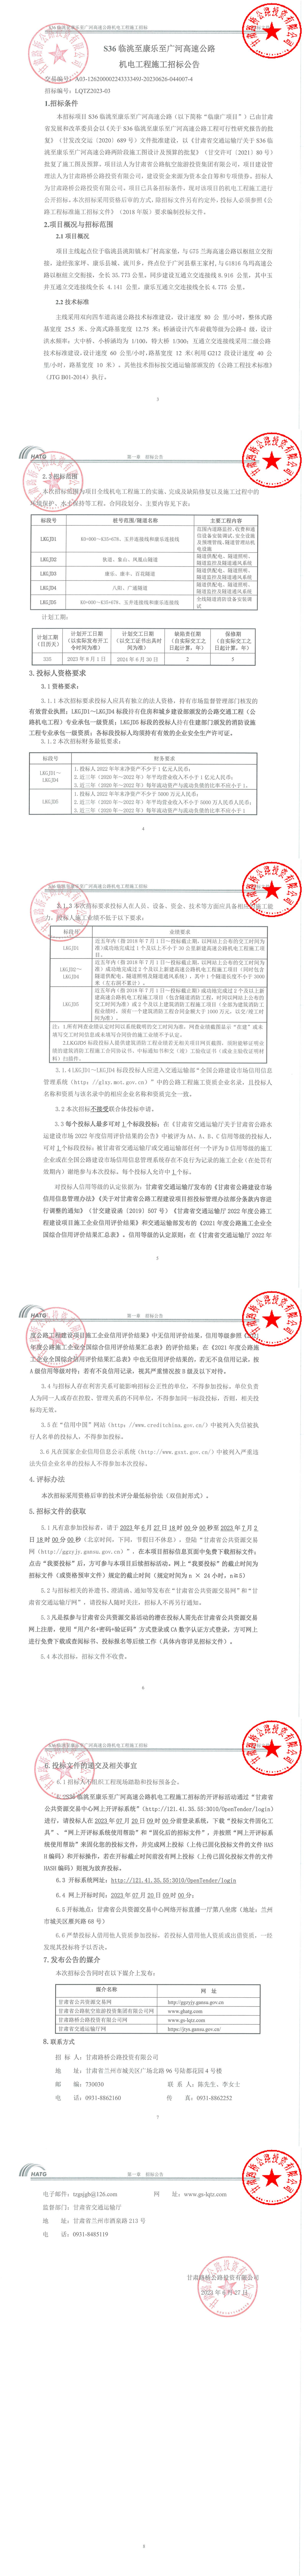 S36臨洮至康樂至廣河高速公路機電工程施工招標公告 簽章_00.jpg